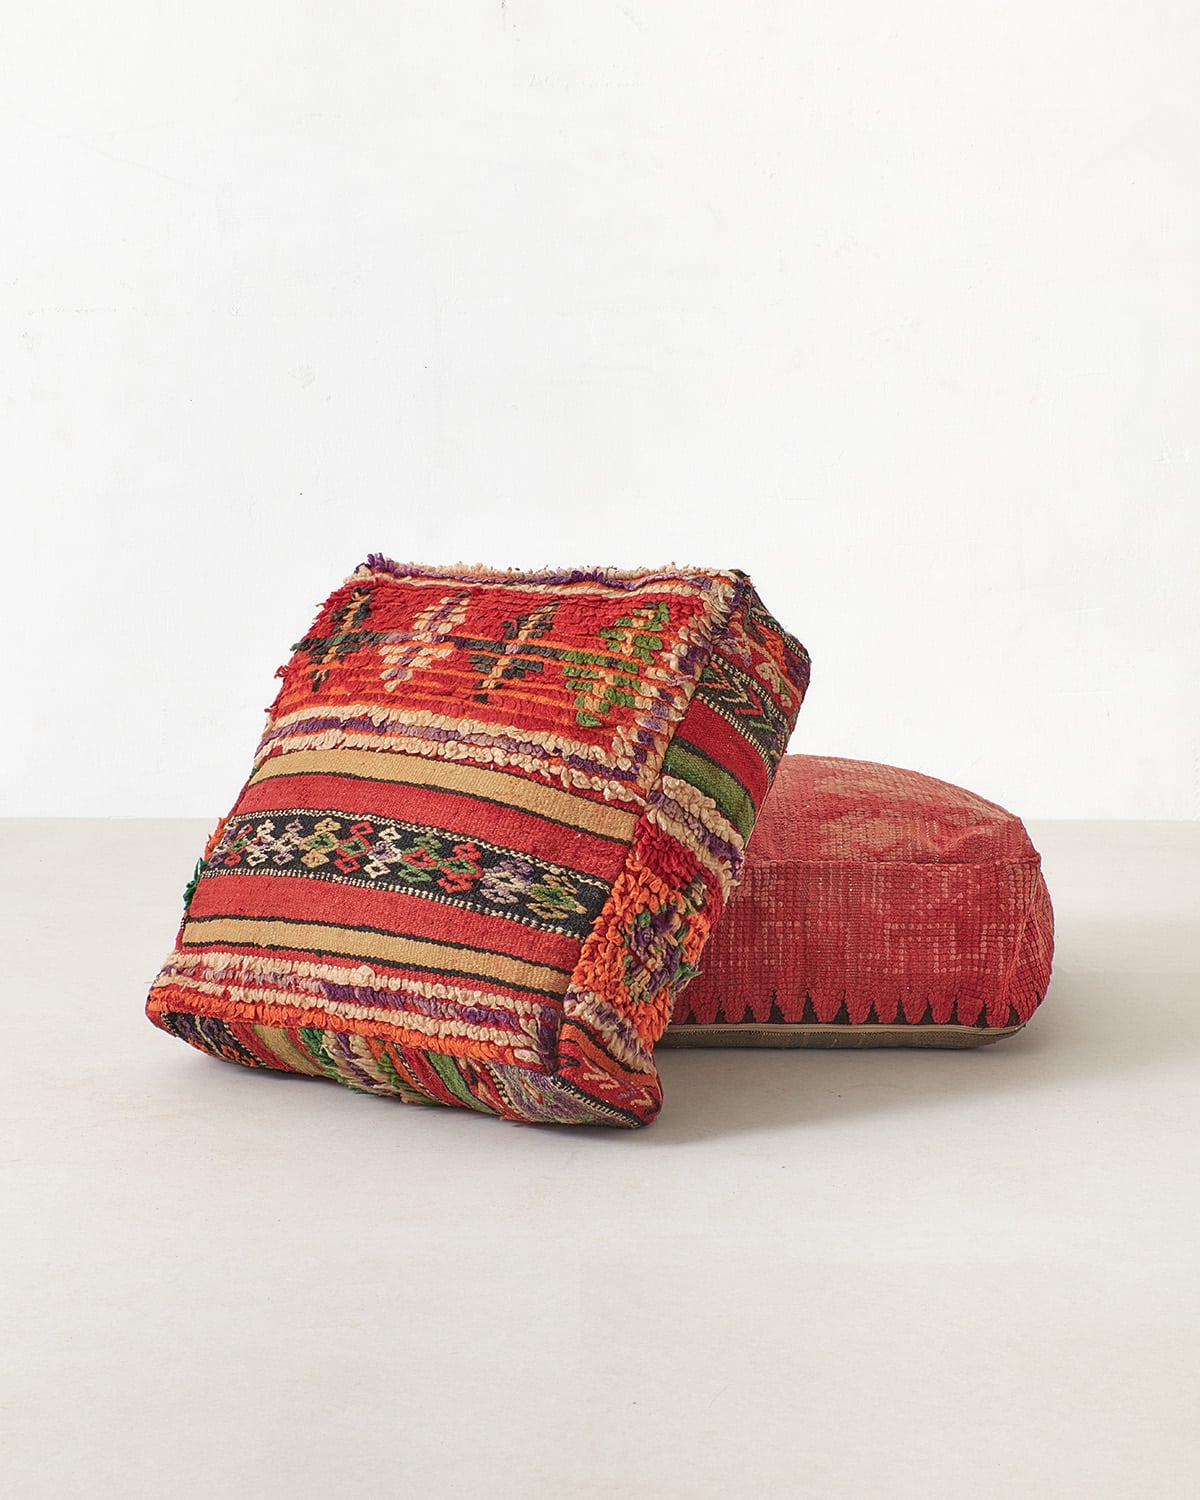 Red Berber Kilim pouf